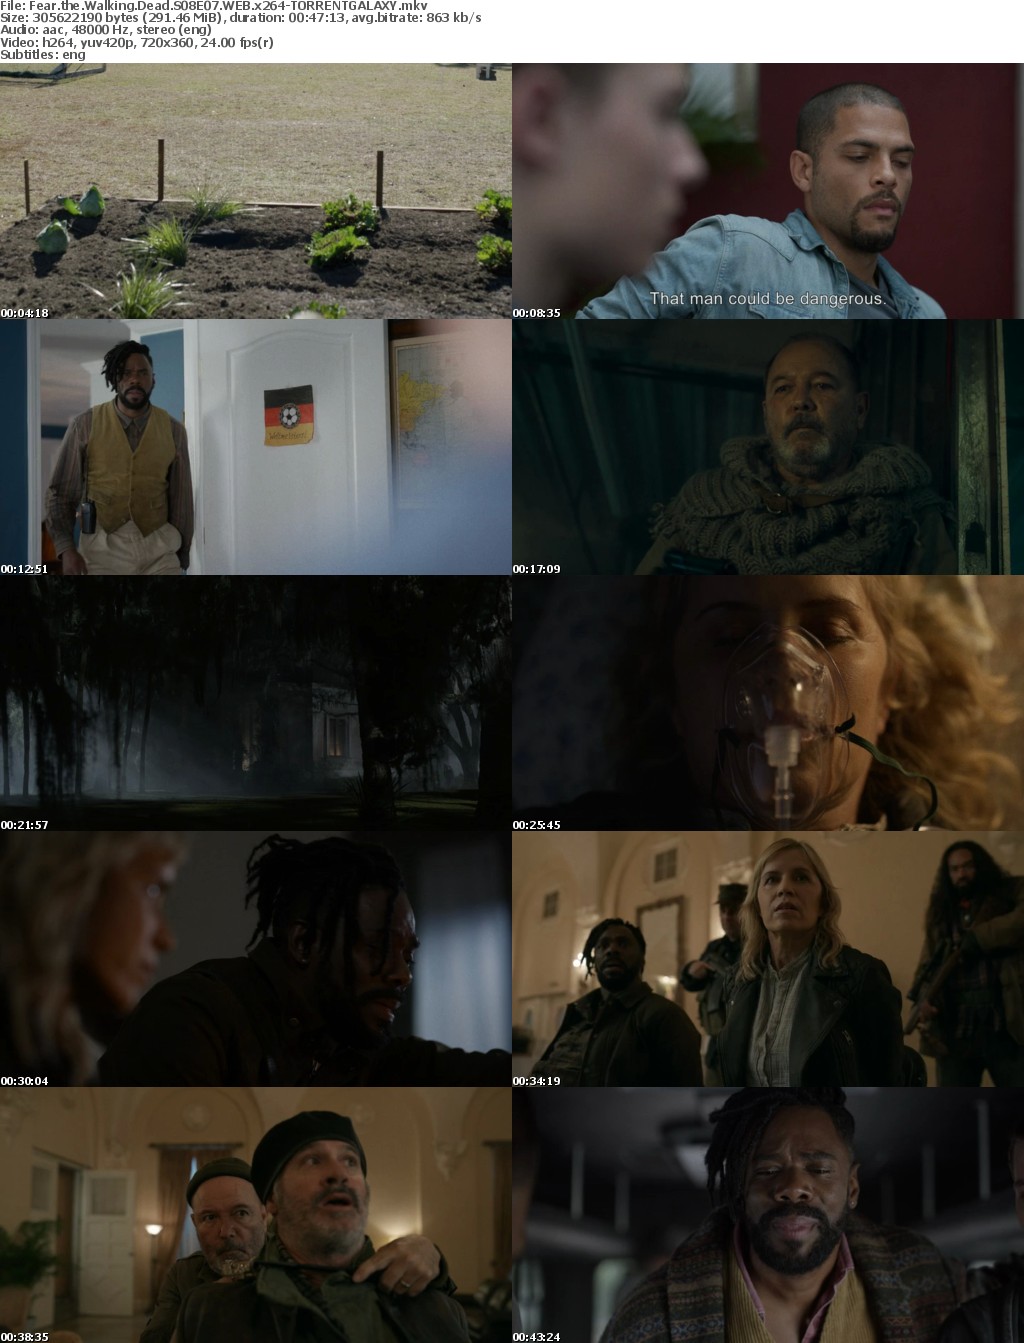 Fear the Walking Dead S08E07 WEB x264-GALAXY